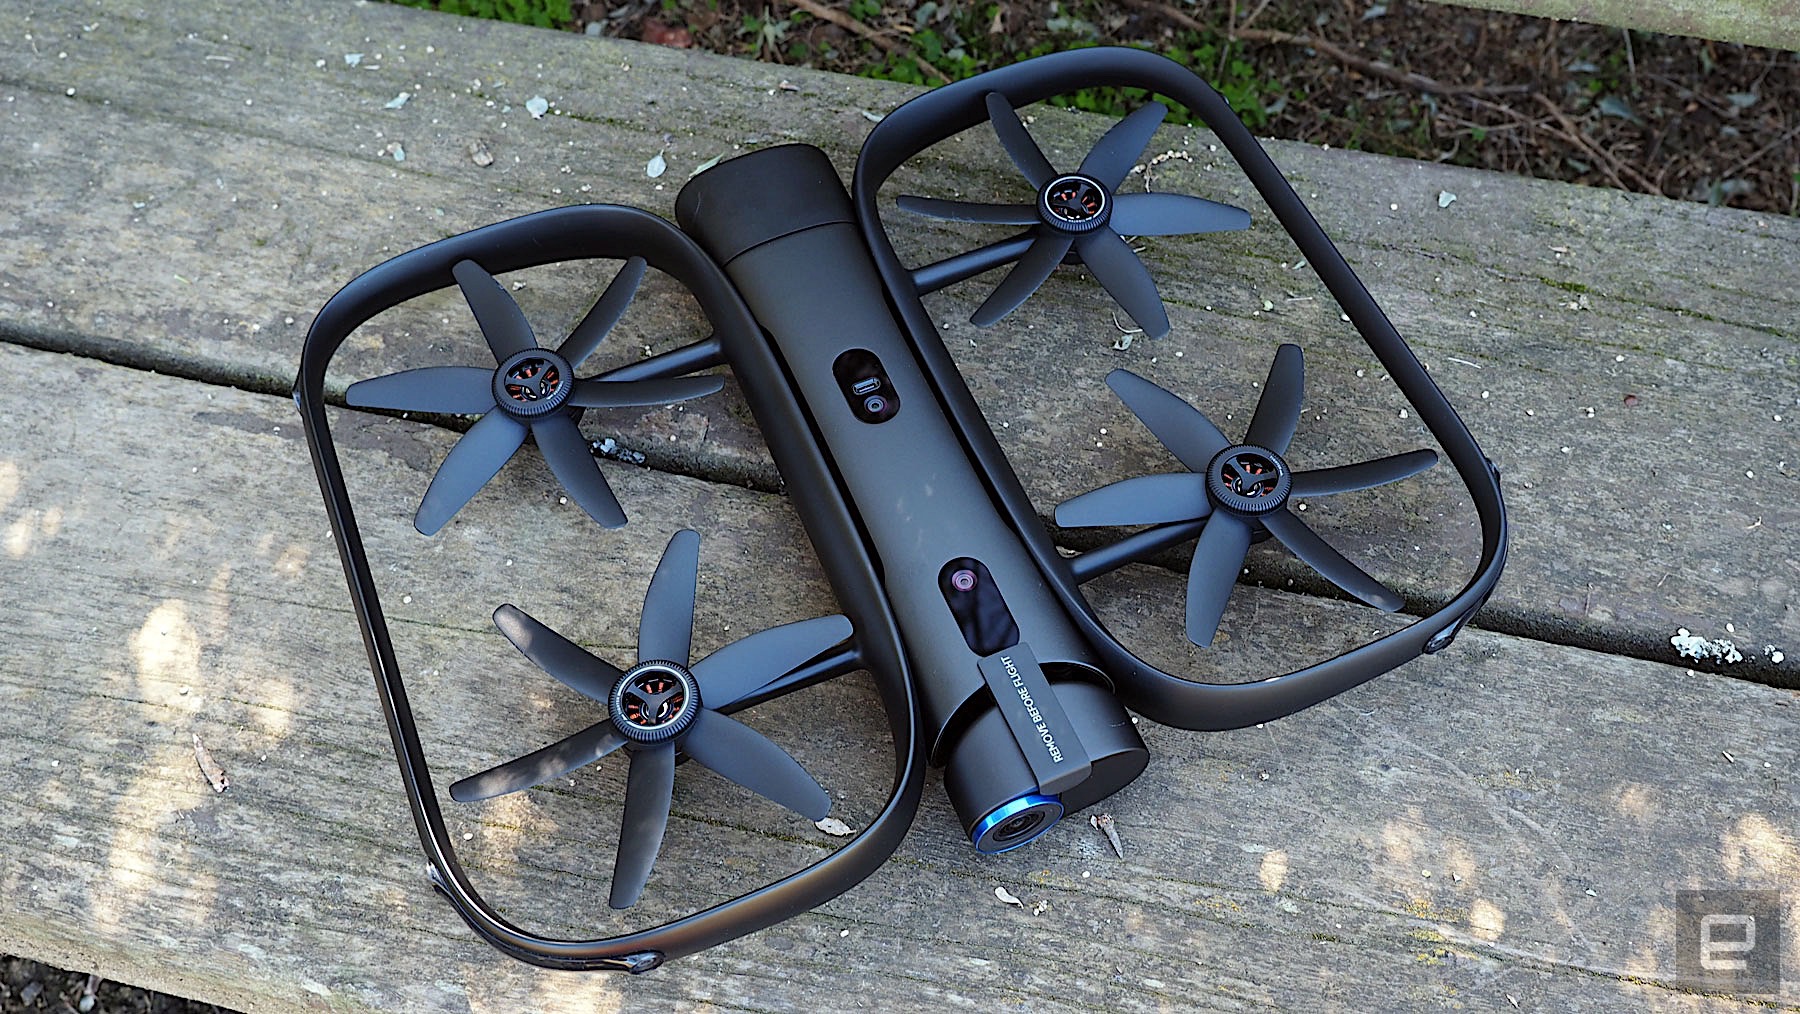 skydio r1 drone